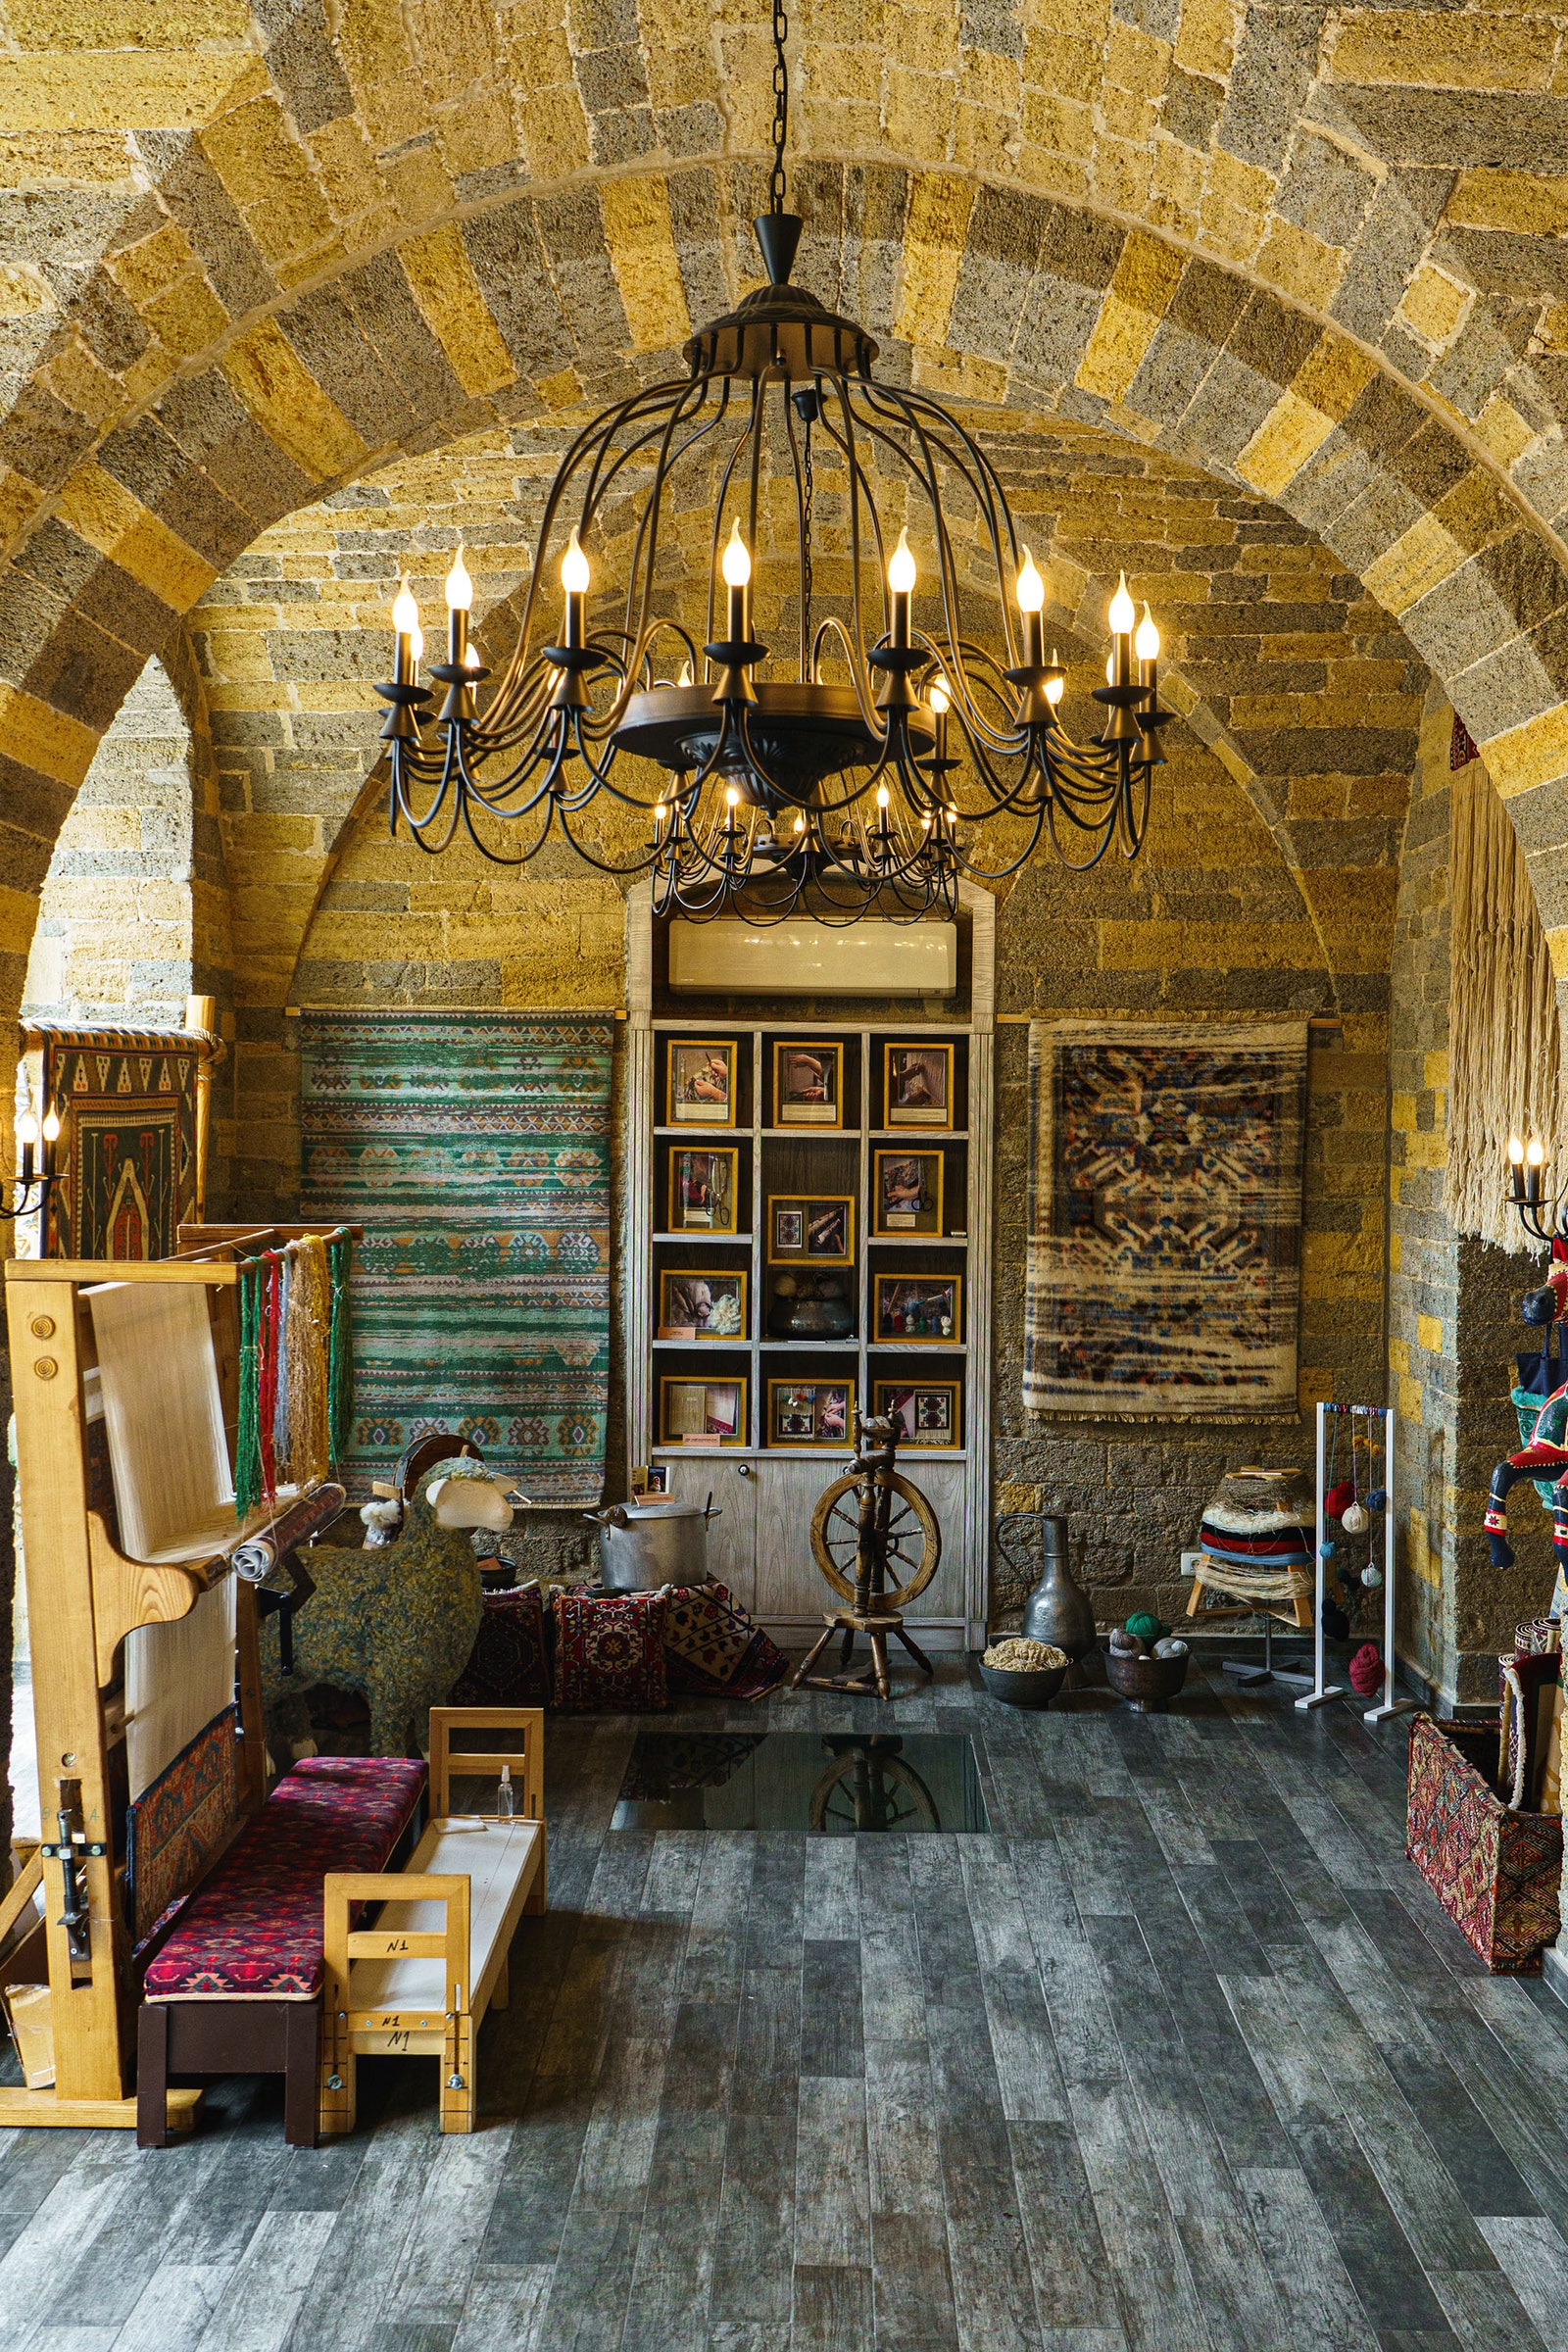 壁に絨毯が掛けられ、鉄製のシャンデリアが部屋を照らす店内のインテリア